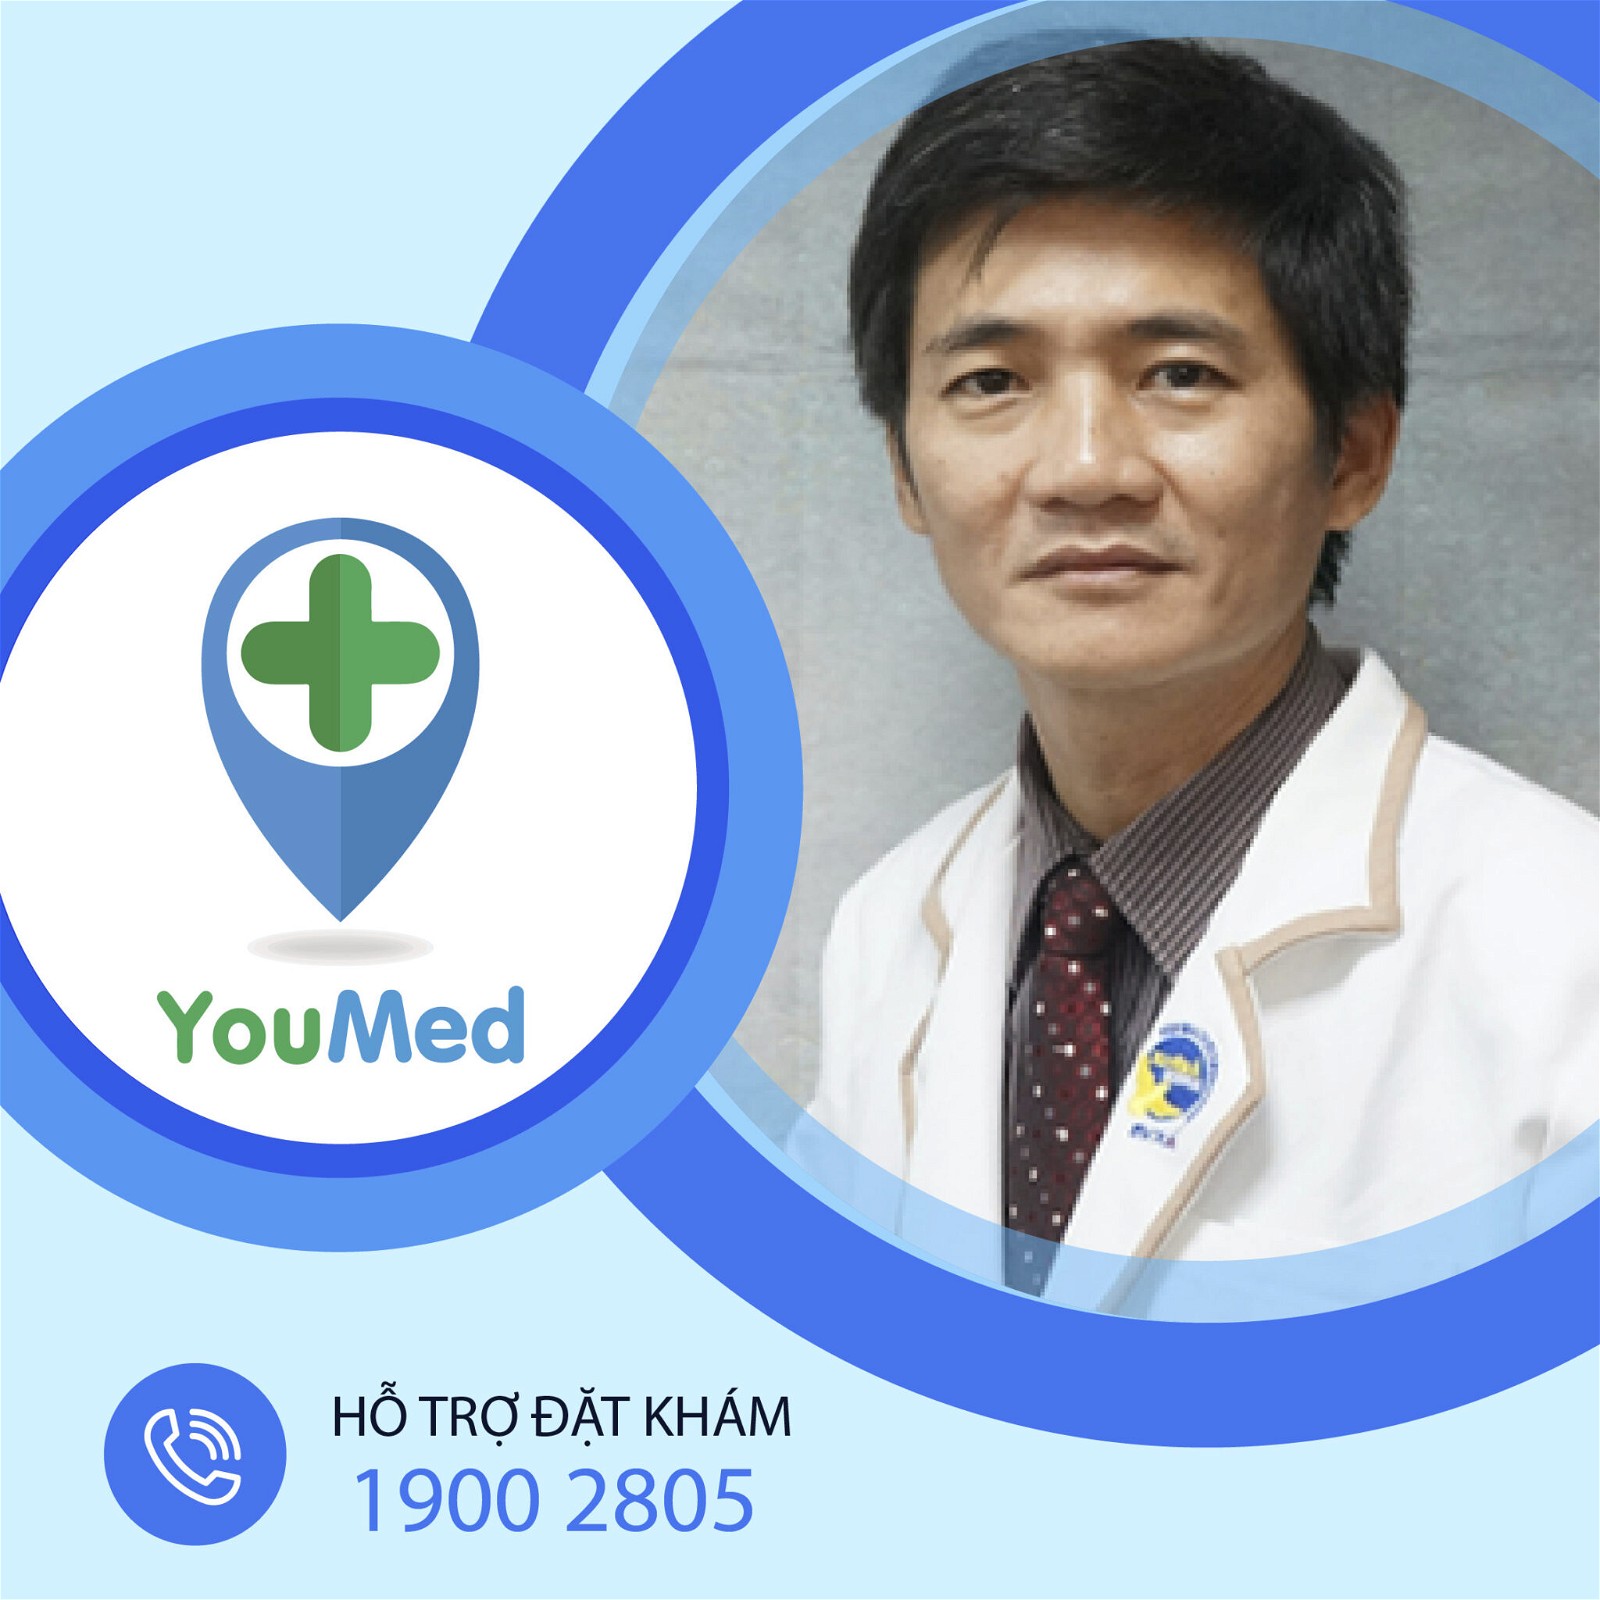 Phòng khám bác sĩ Nguyễn Hữu Tín là địa chỉ phòng khám thần kinh uy tín